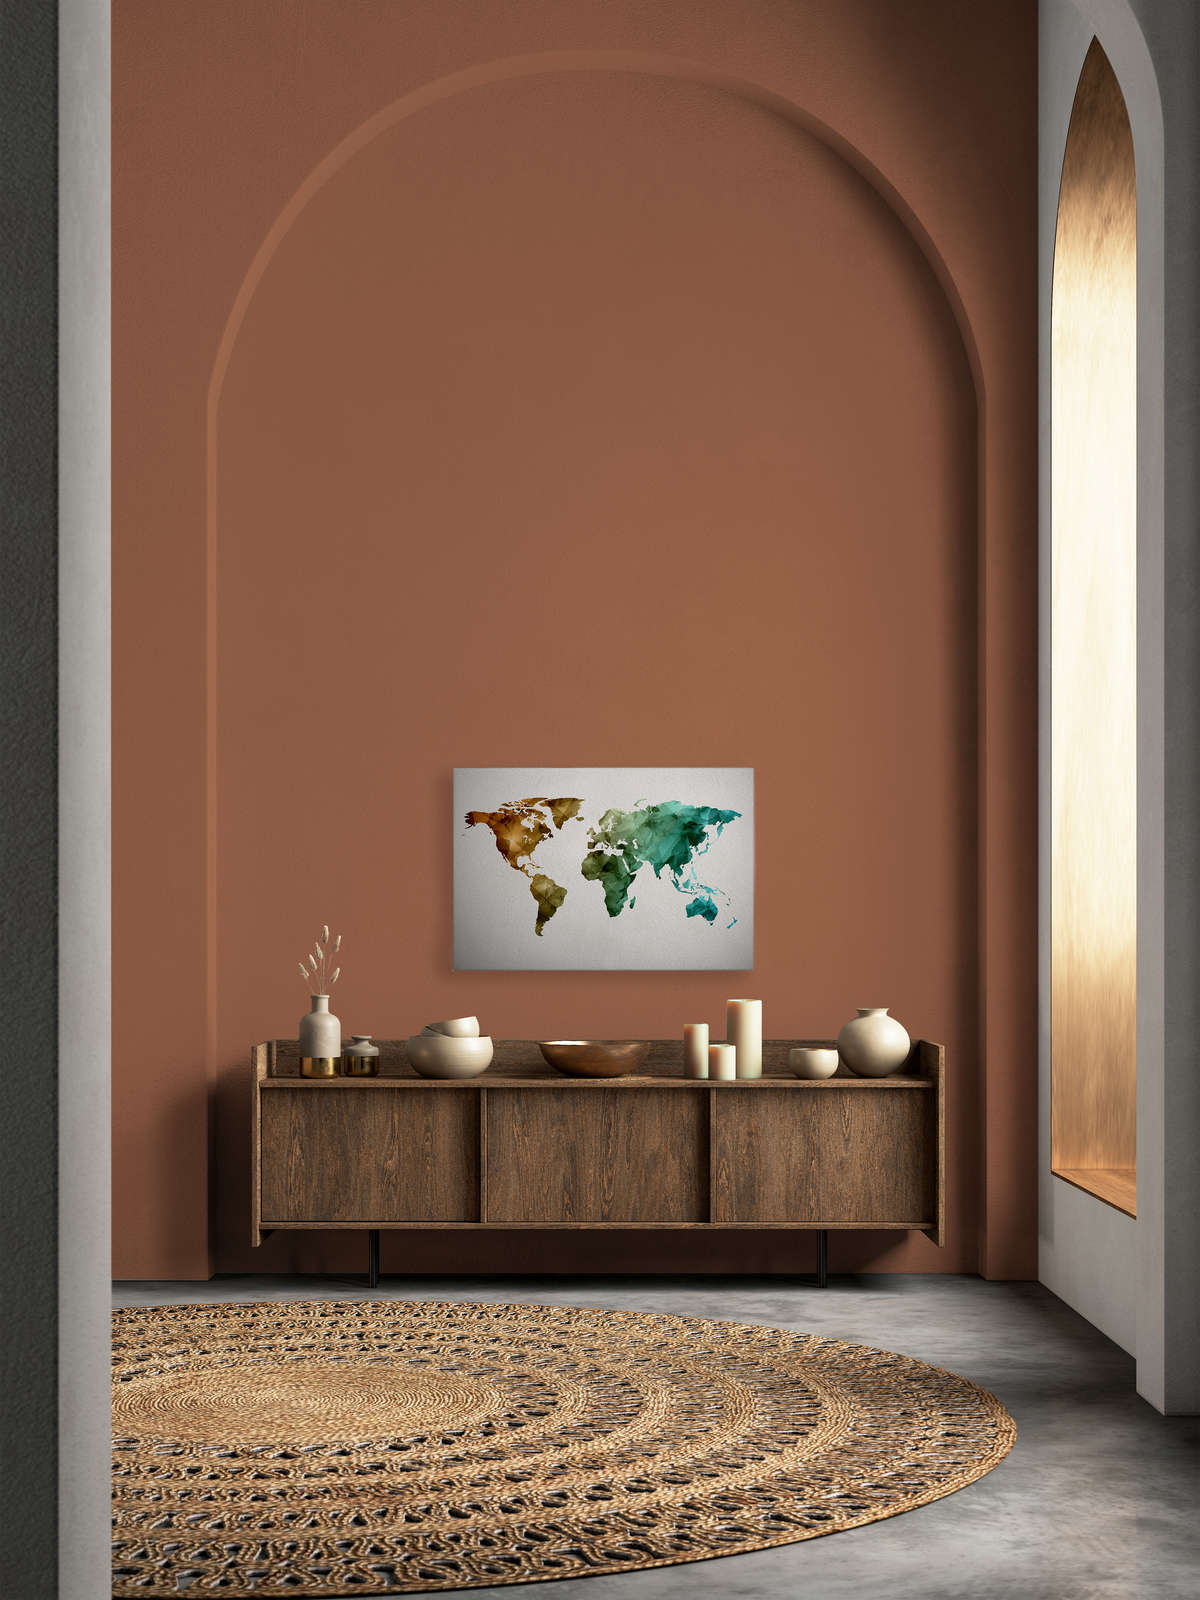             Canvas met wereldkaart gemaakt van grafische elementen | WorldGrafic 1 - 0.90 m x 0.60 m
        